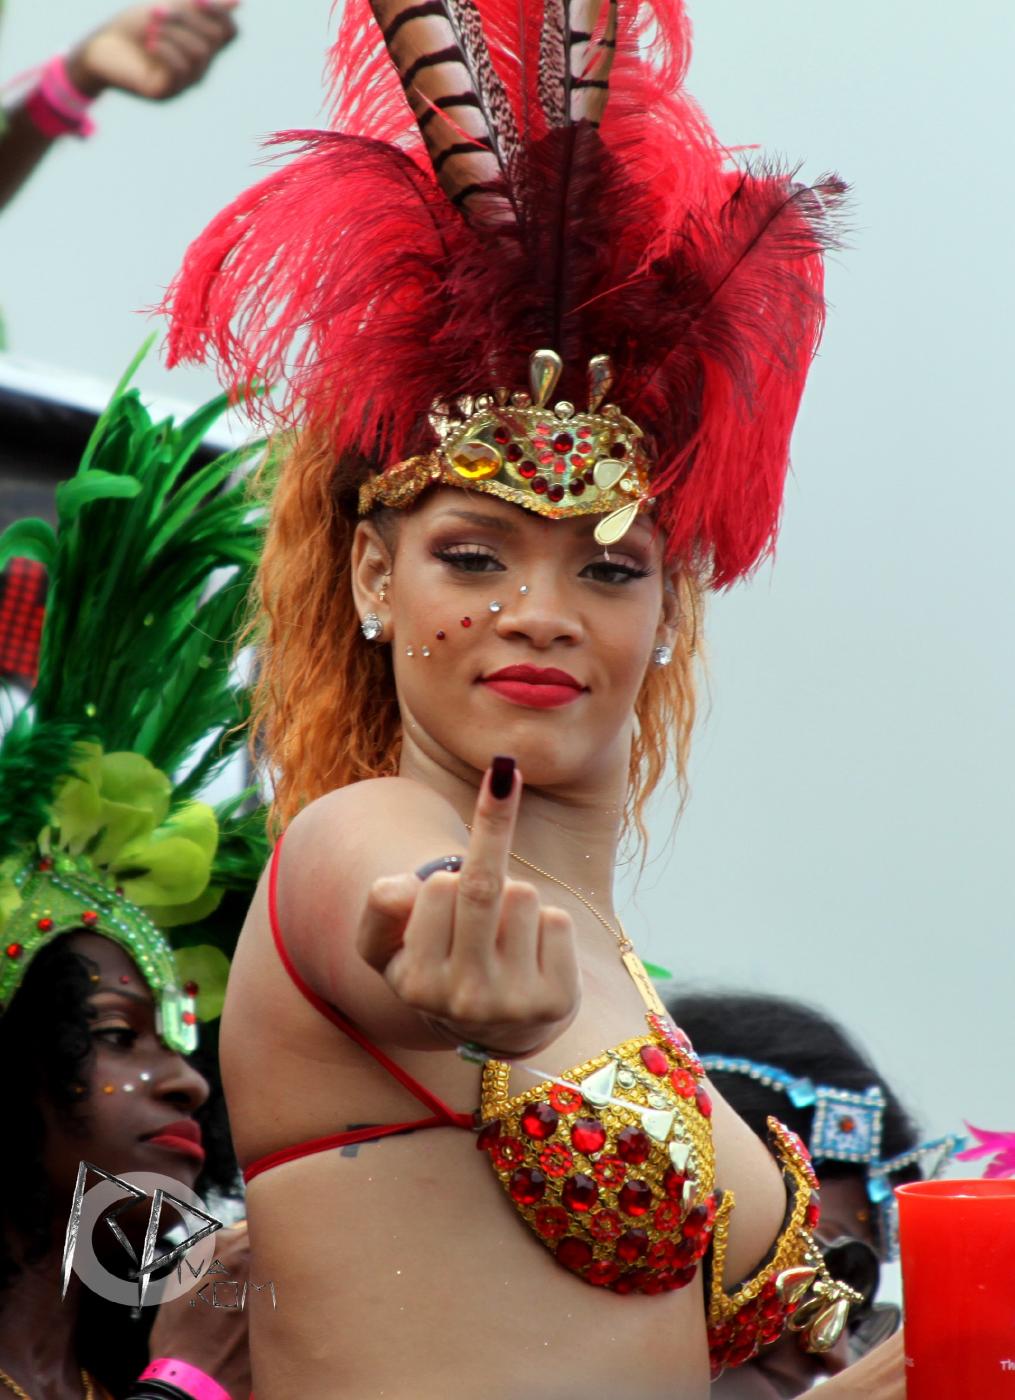 Rihanna Bikini Festival Nip Slip Photos Leaked